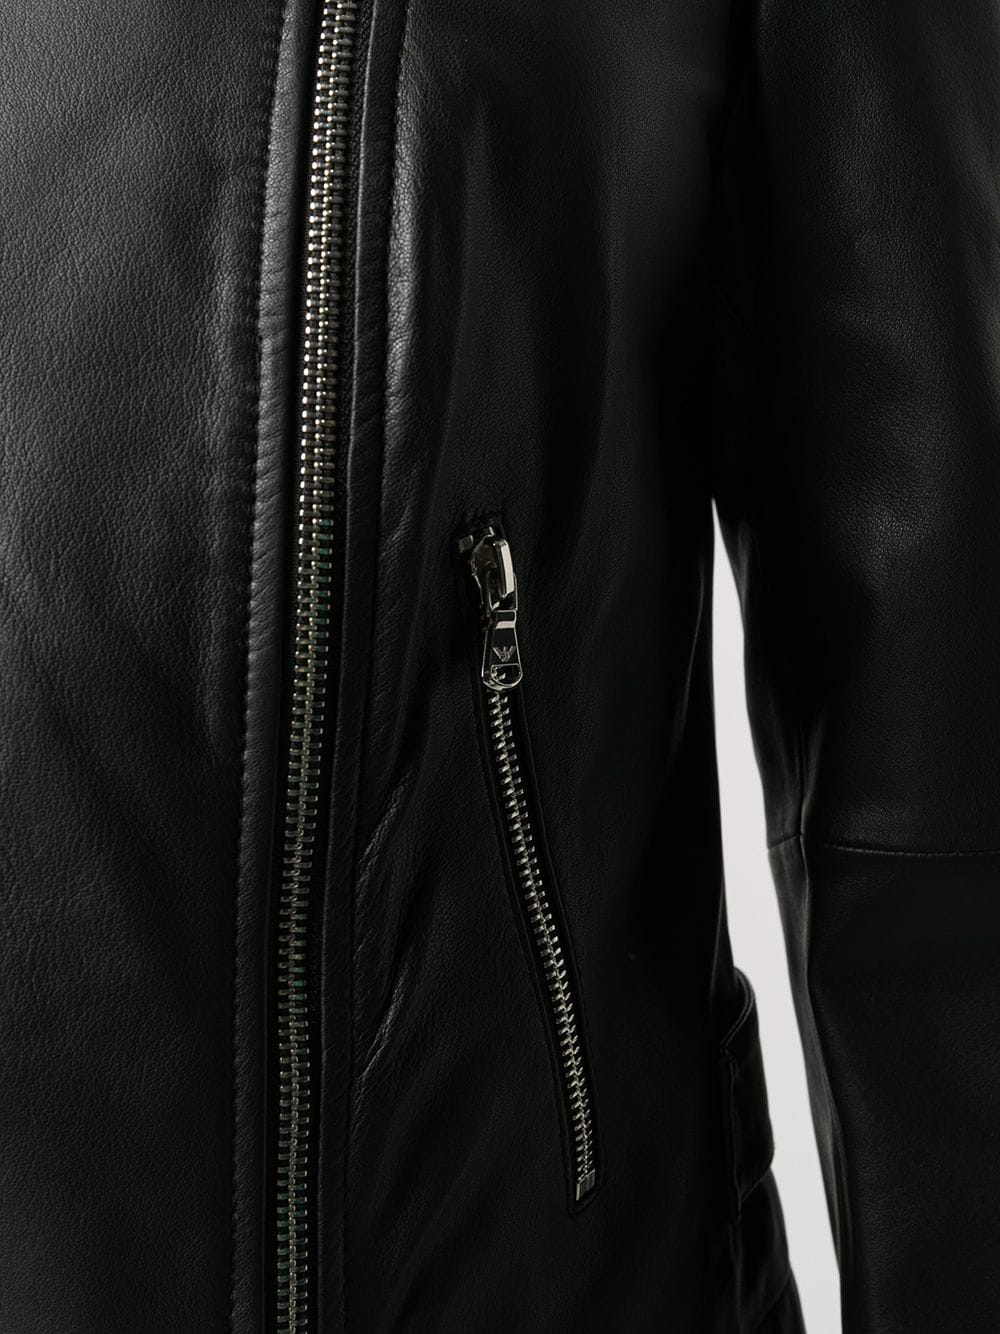 Emporio Armani Jackets Black